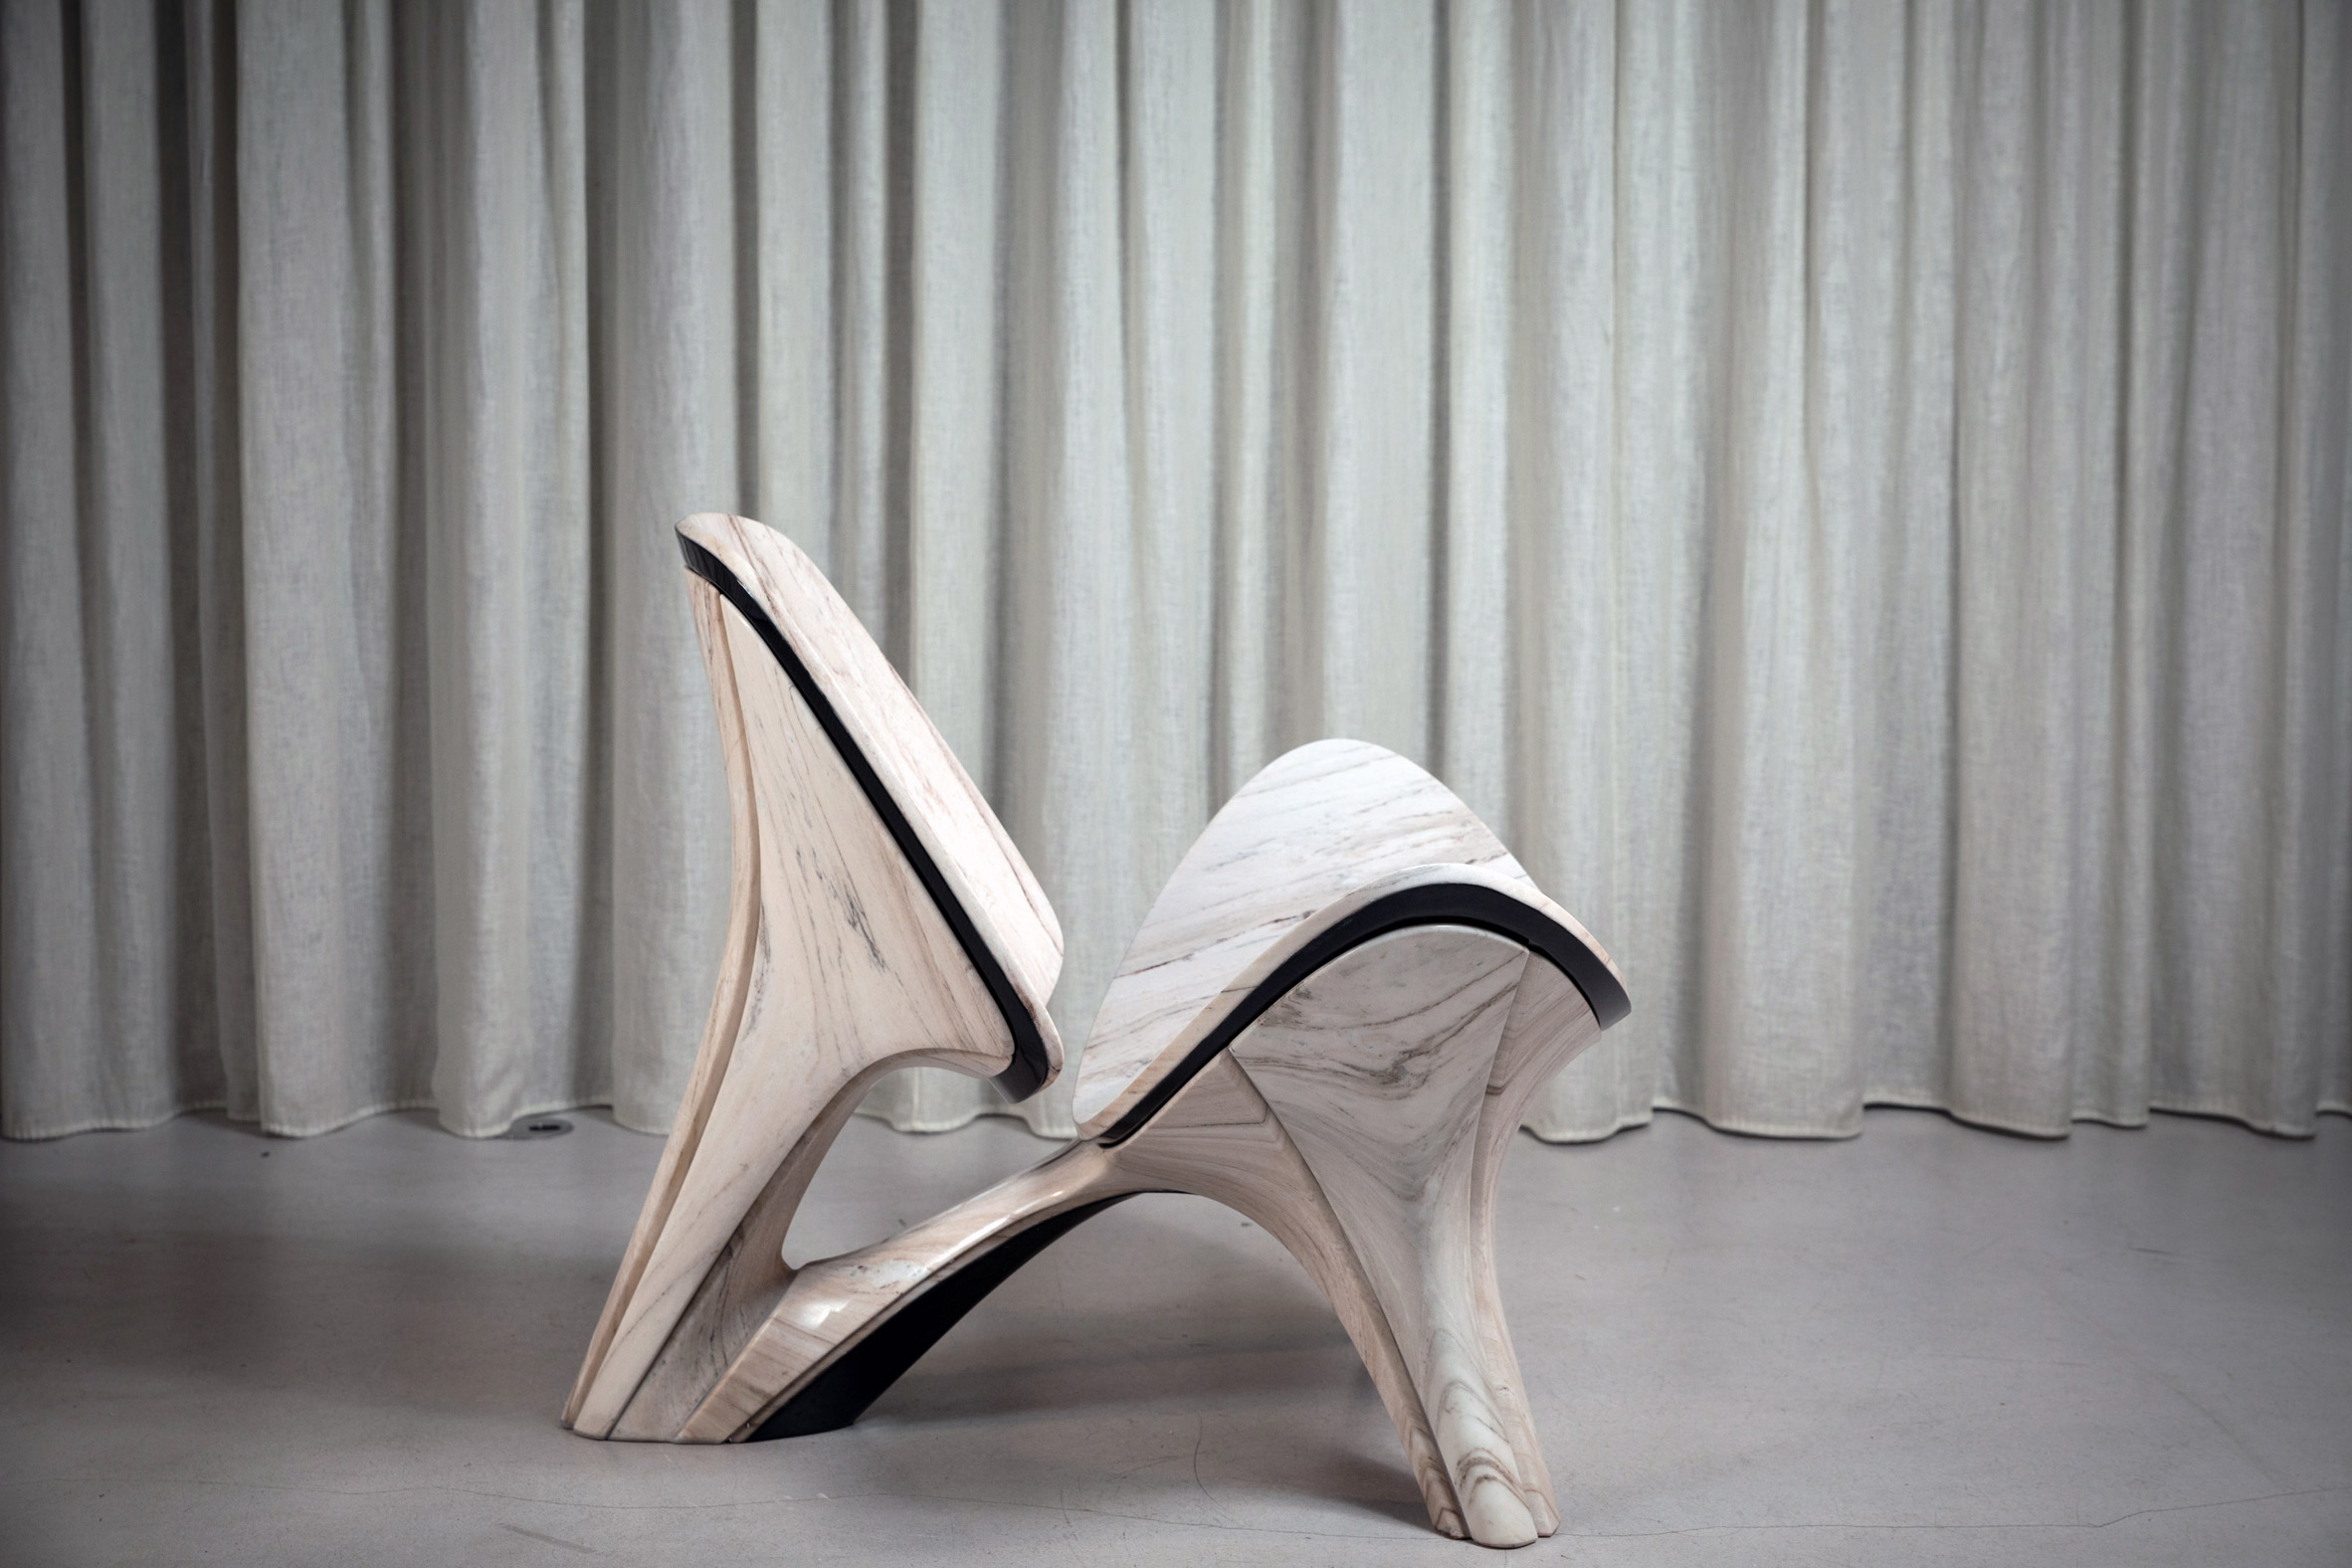 Escritório Zaha Hadid recria cadeira de Hans J Wegner em mármore